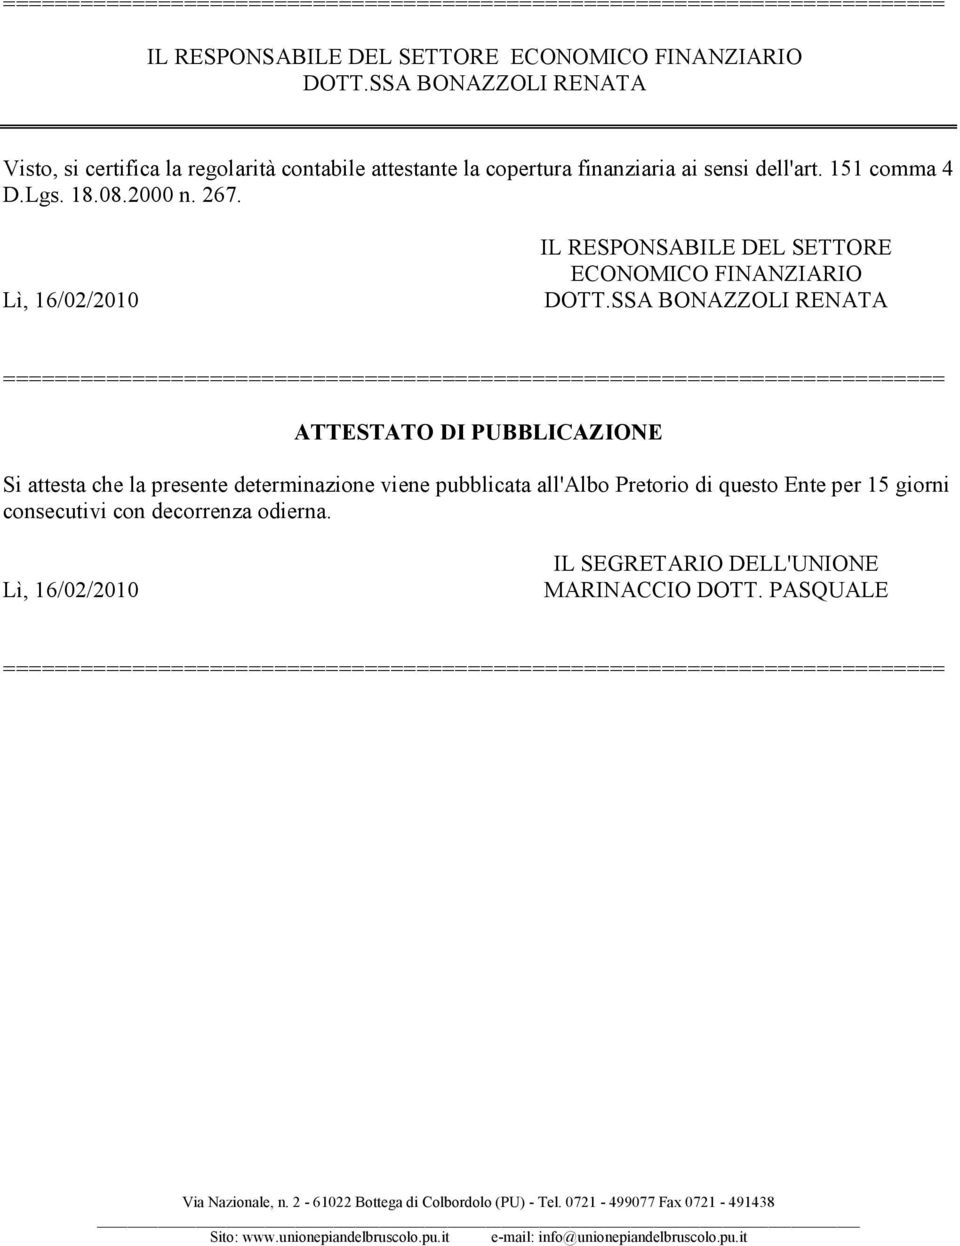 Lì, 16/02/2010 IL RESPONSABILE DEL SETTORE ECONOMICO FINANZIARIO DOTT.